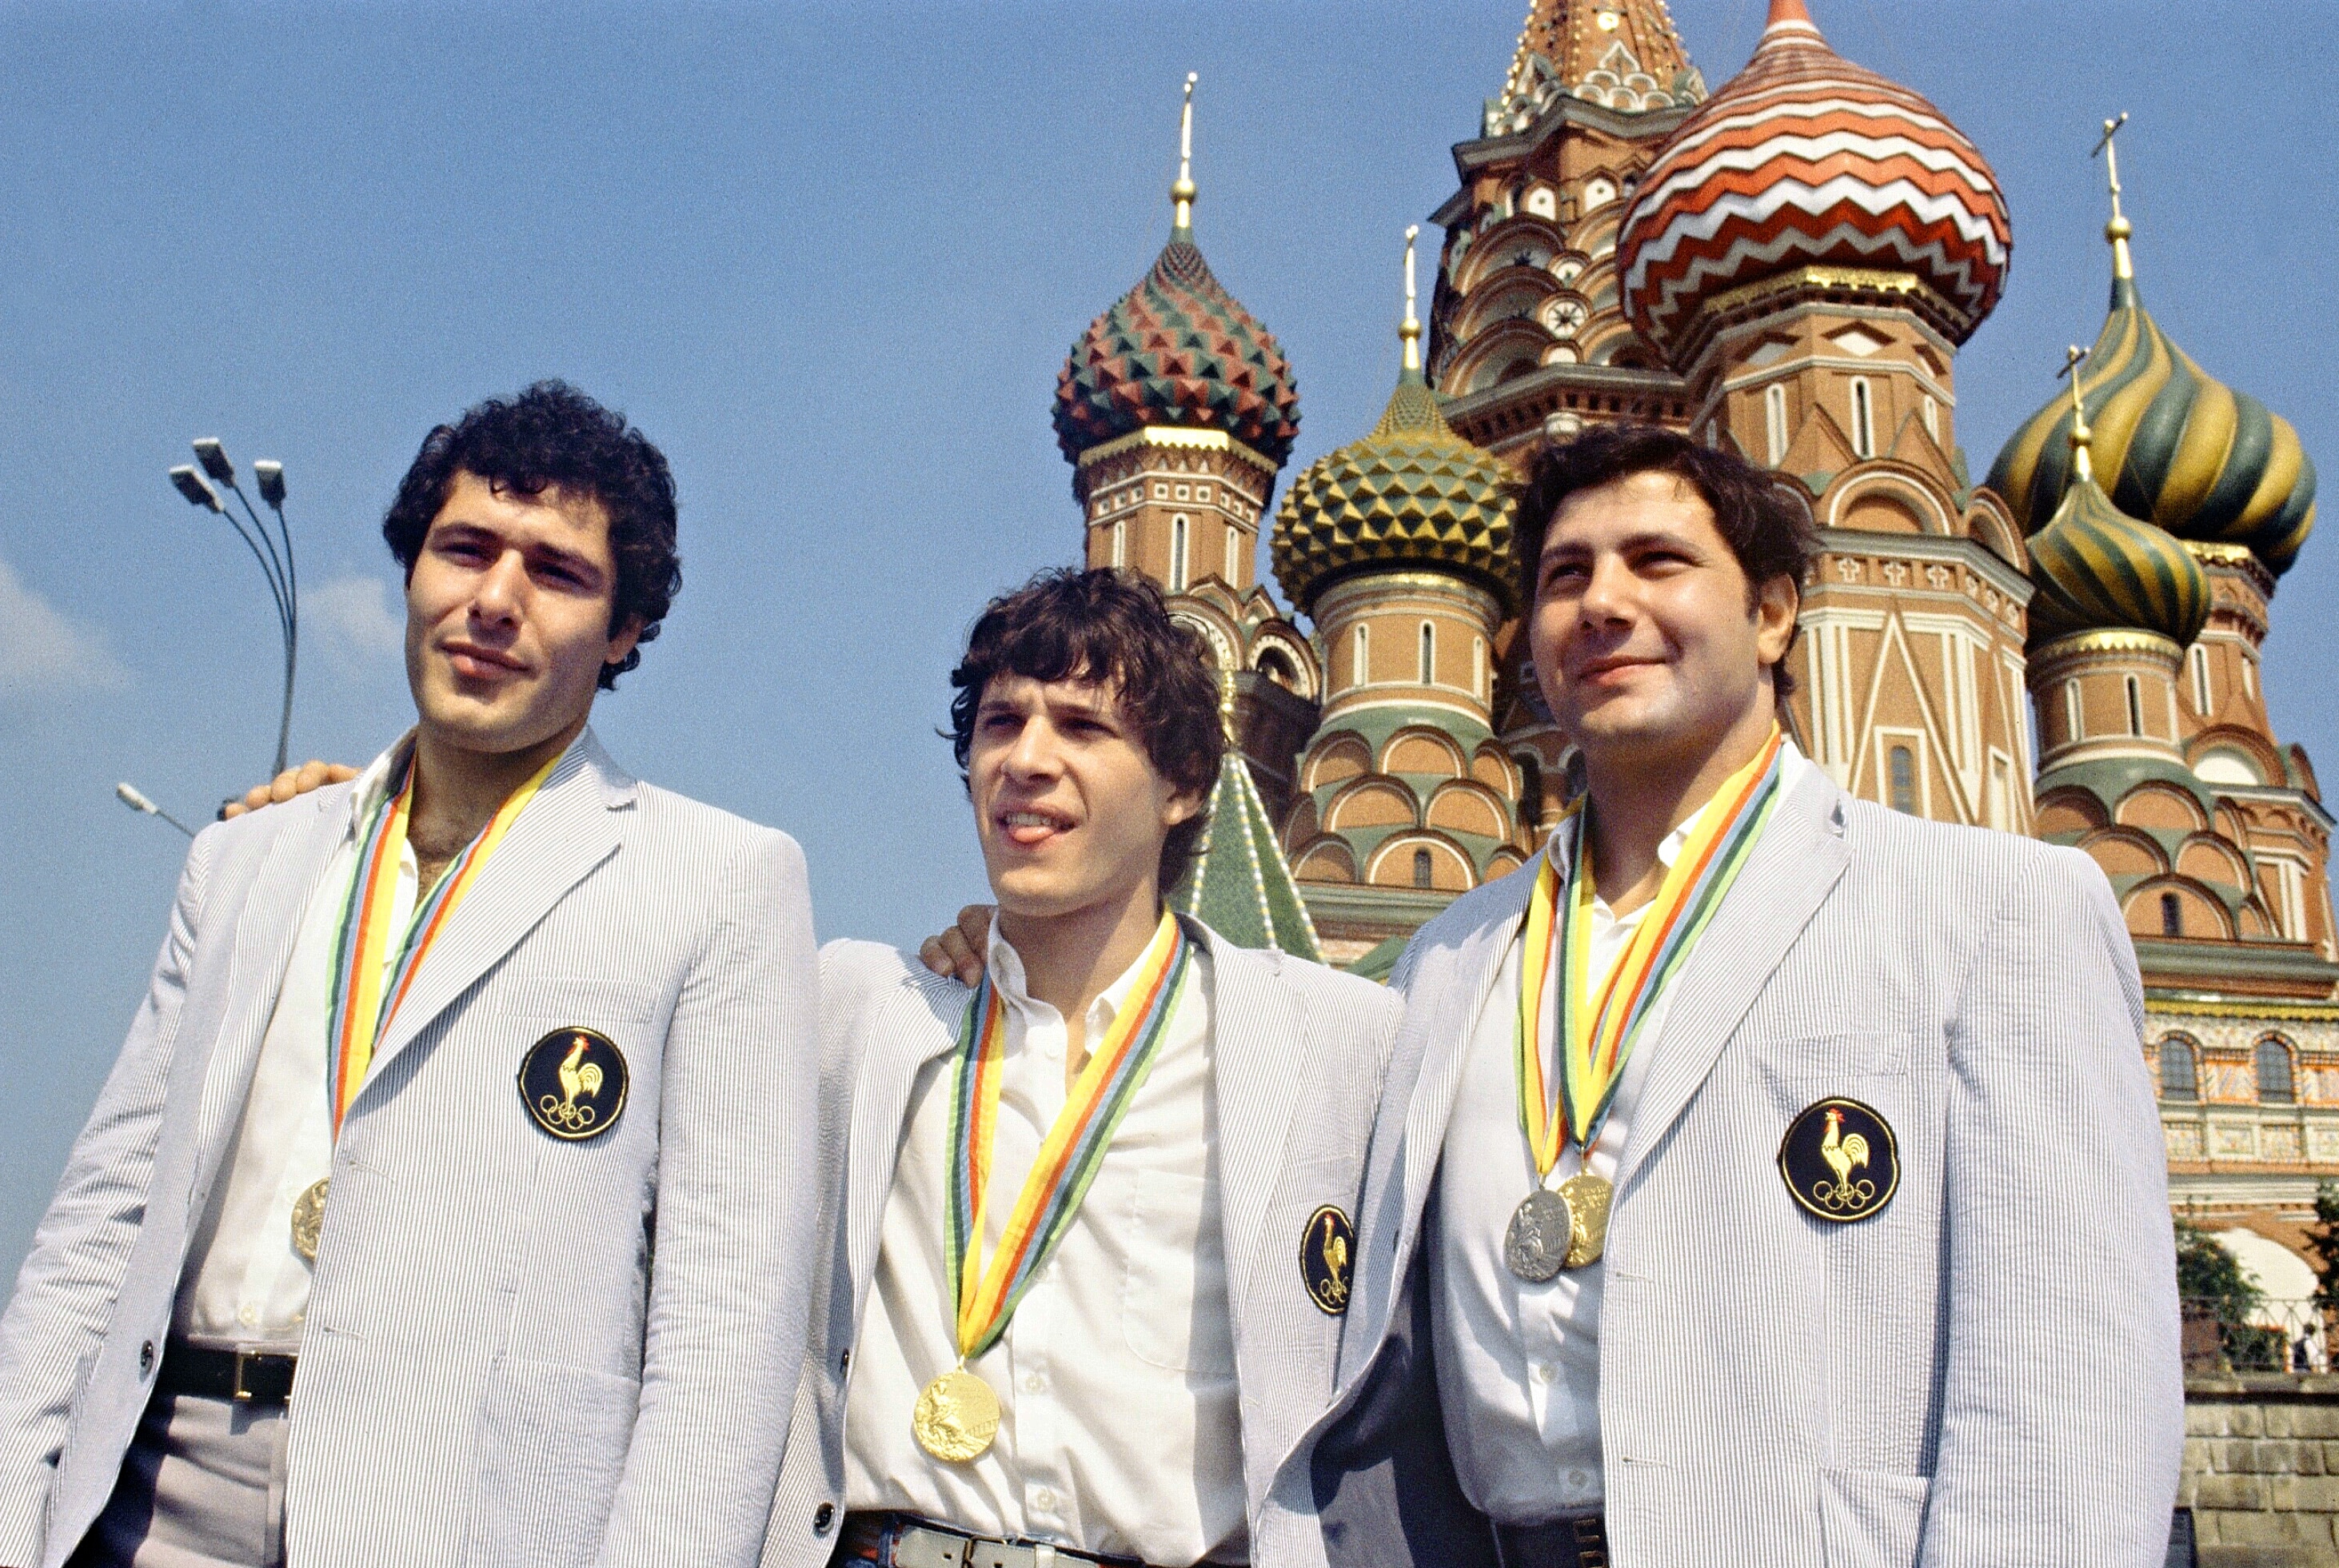 Judoka francesi, medagliati ai giochi olimpici del 1980 in posa nella Piazza Rossa a Mosca